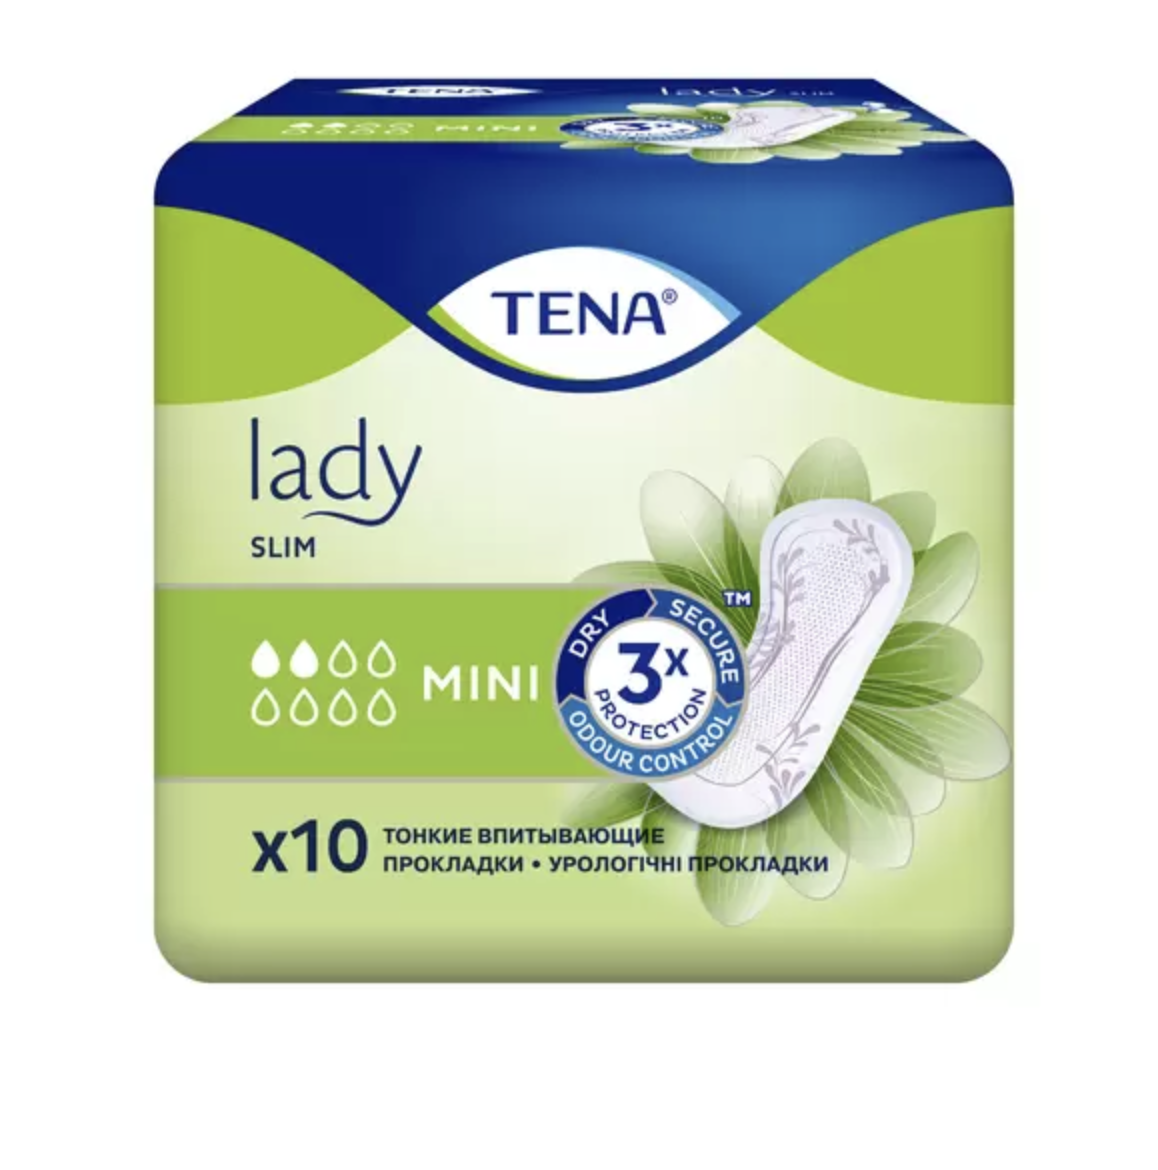     / Tena Lady Slim -   Mini 10 